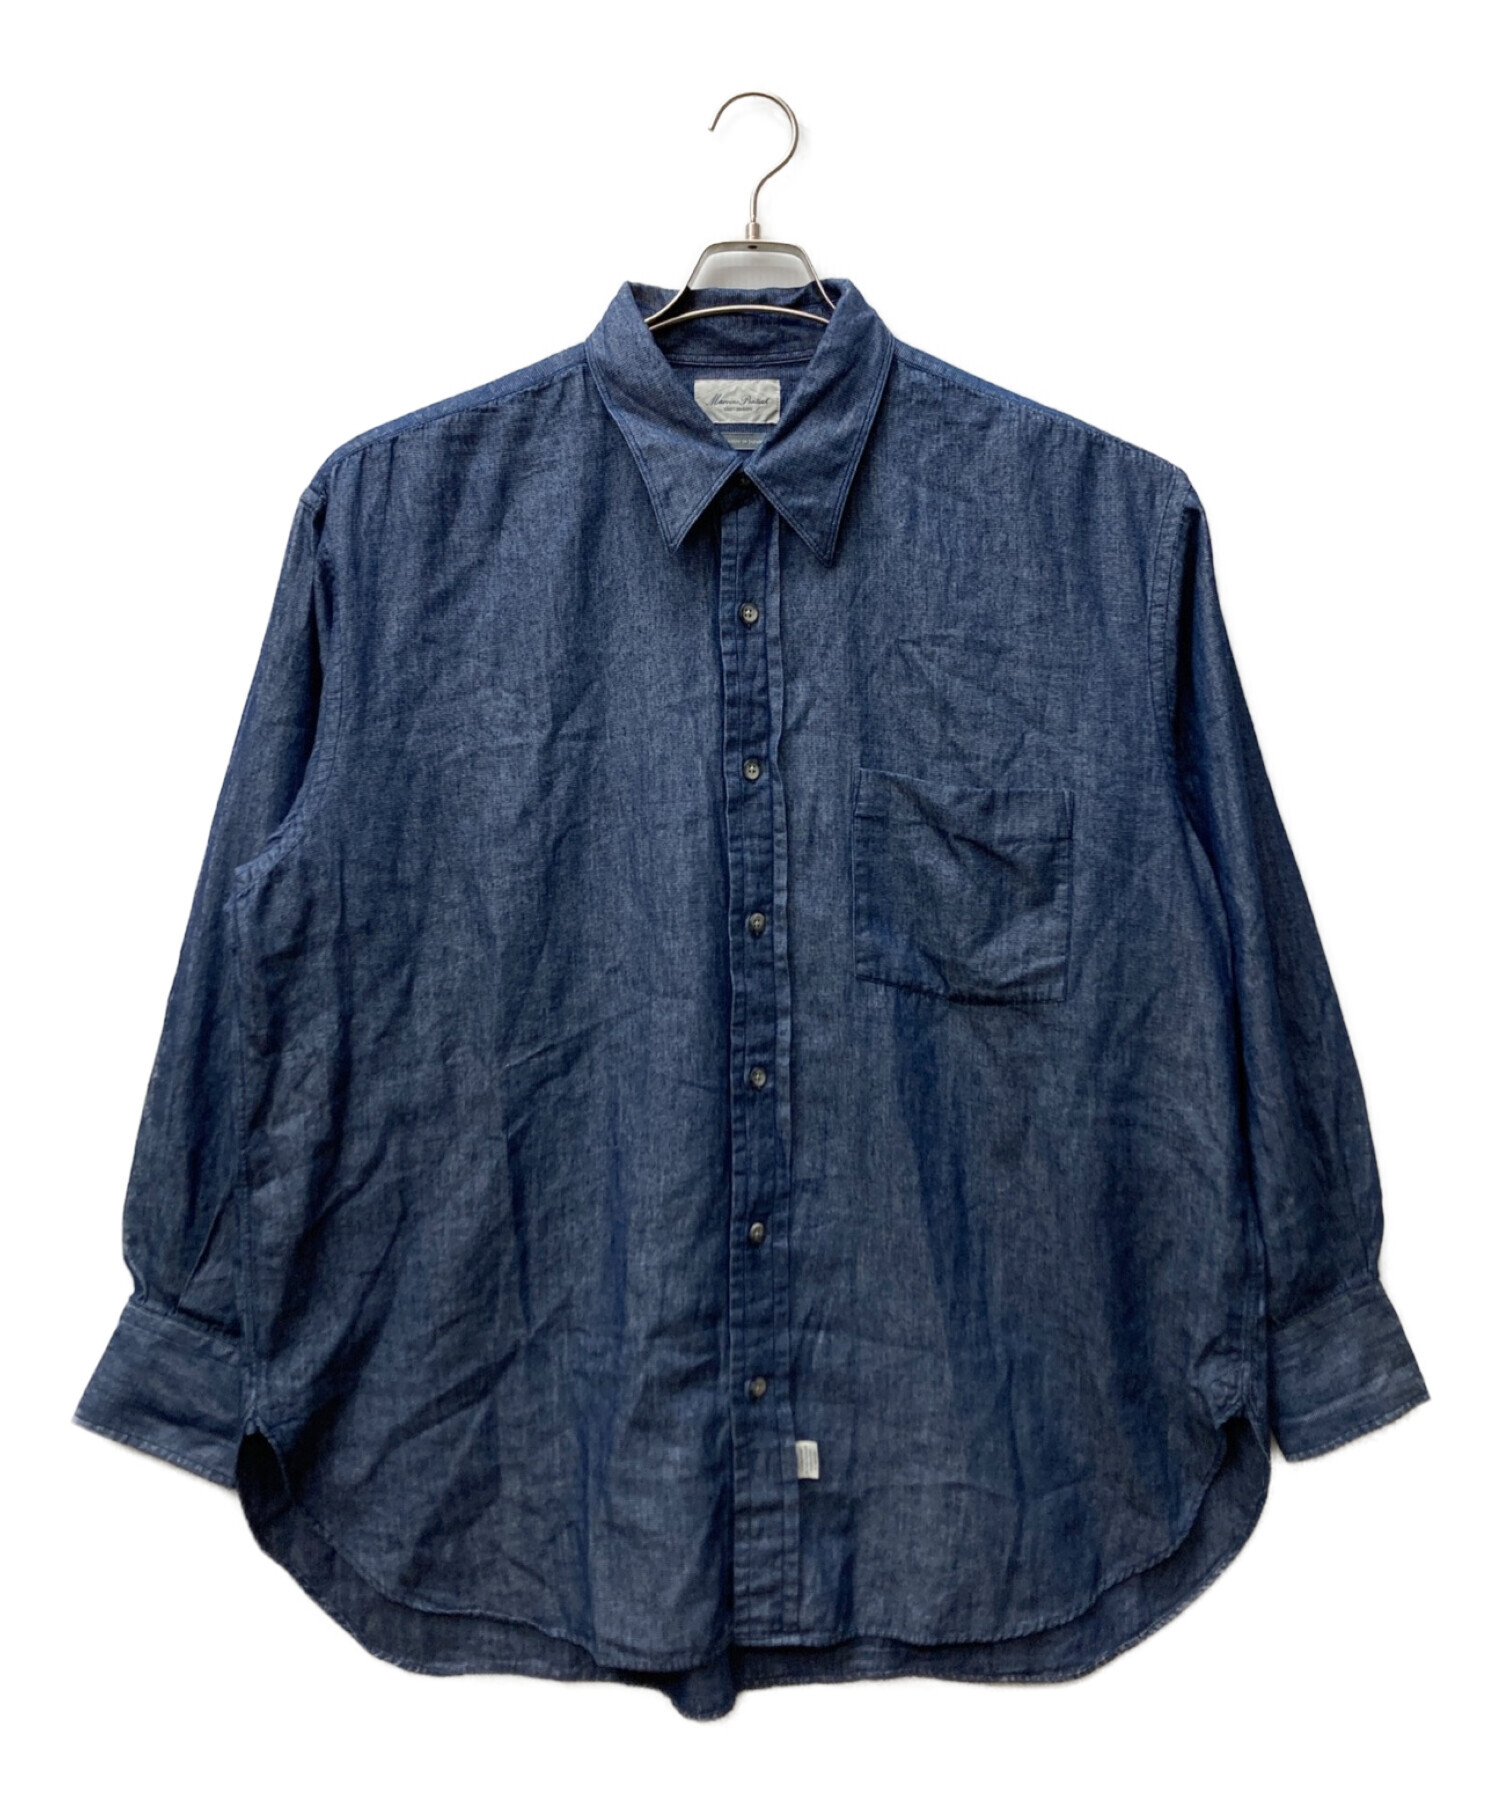 Marvine Pontiak Shirt Makers (マーヴィンポンティアックシャツメイカーズ) レギュラーカラーシャツ ネイビー  サイズ:One size